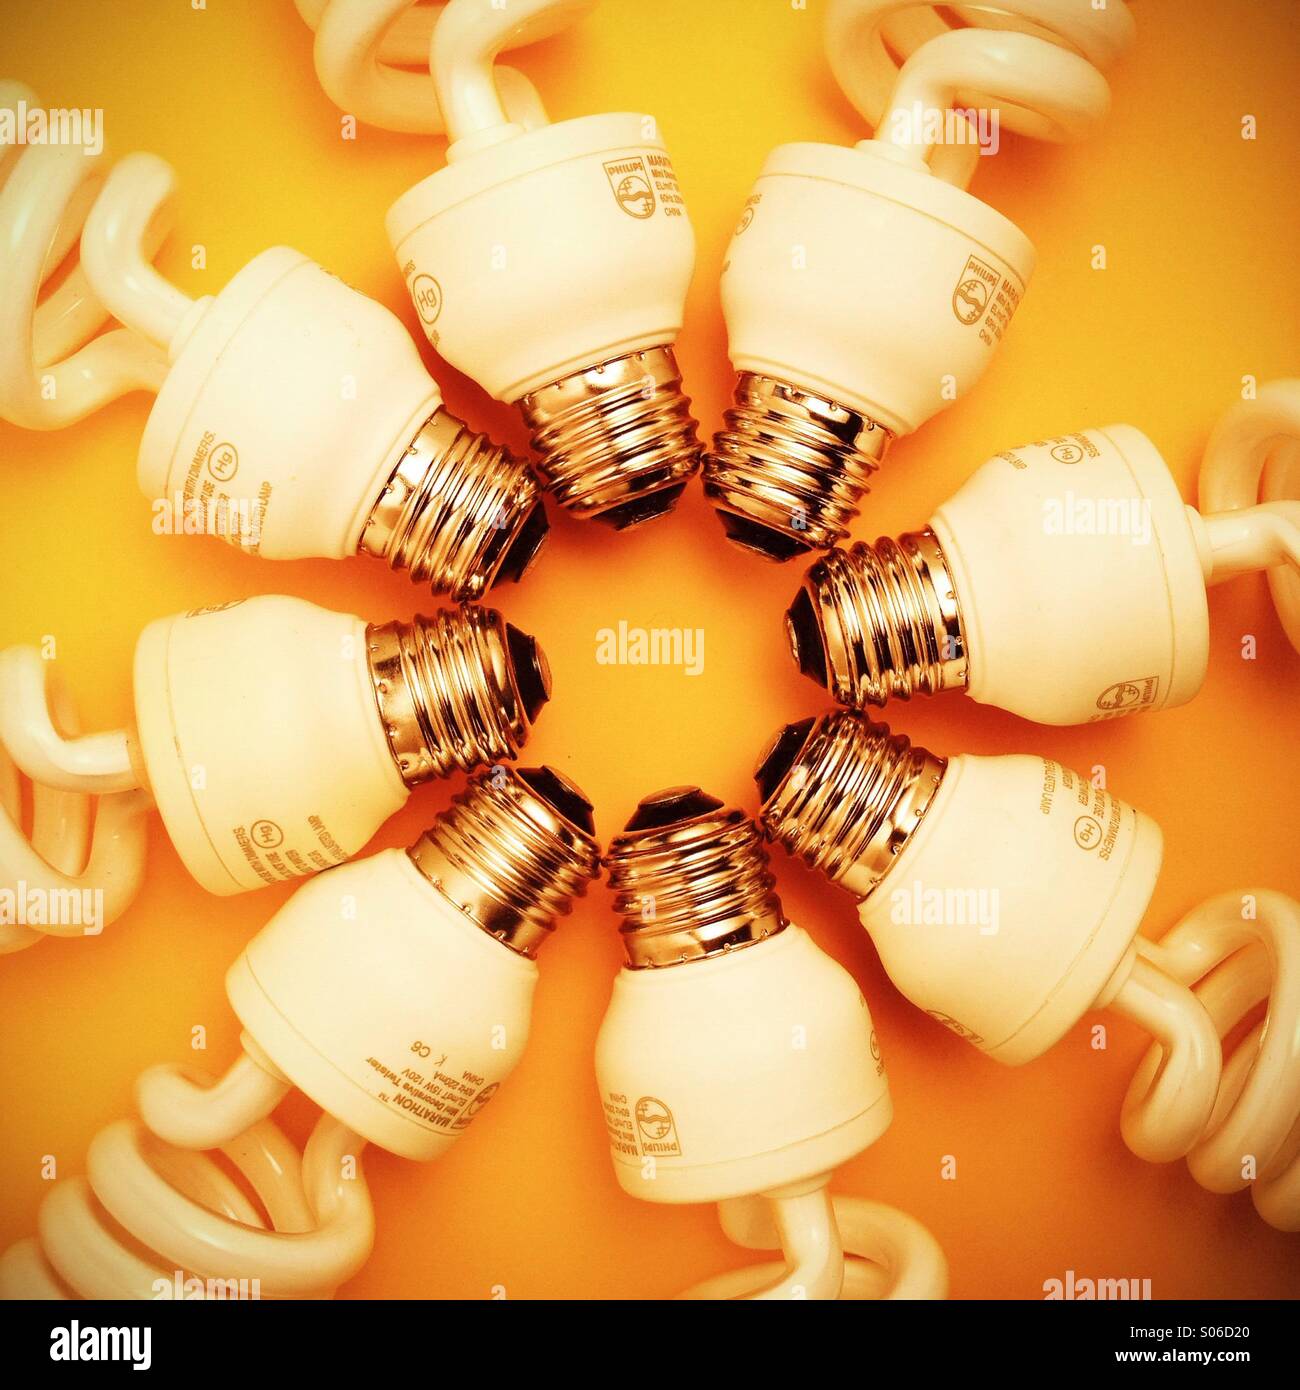 Les ampoules fluorescentes compactes disposées sur un fond jaune Banque D'Images